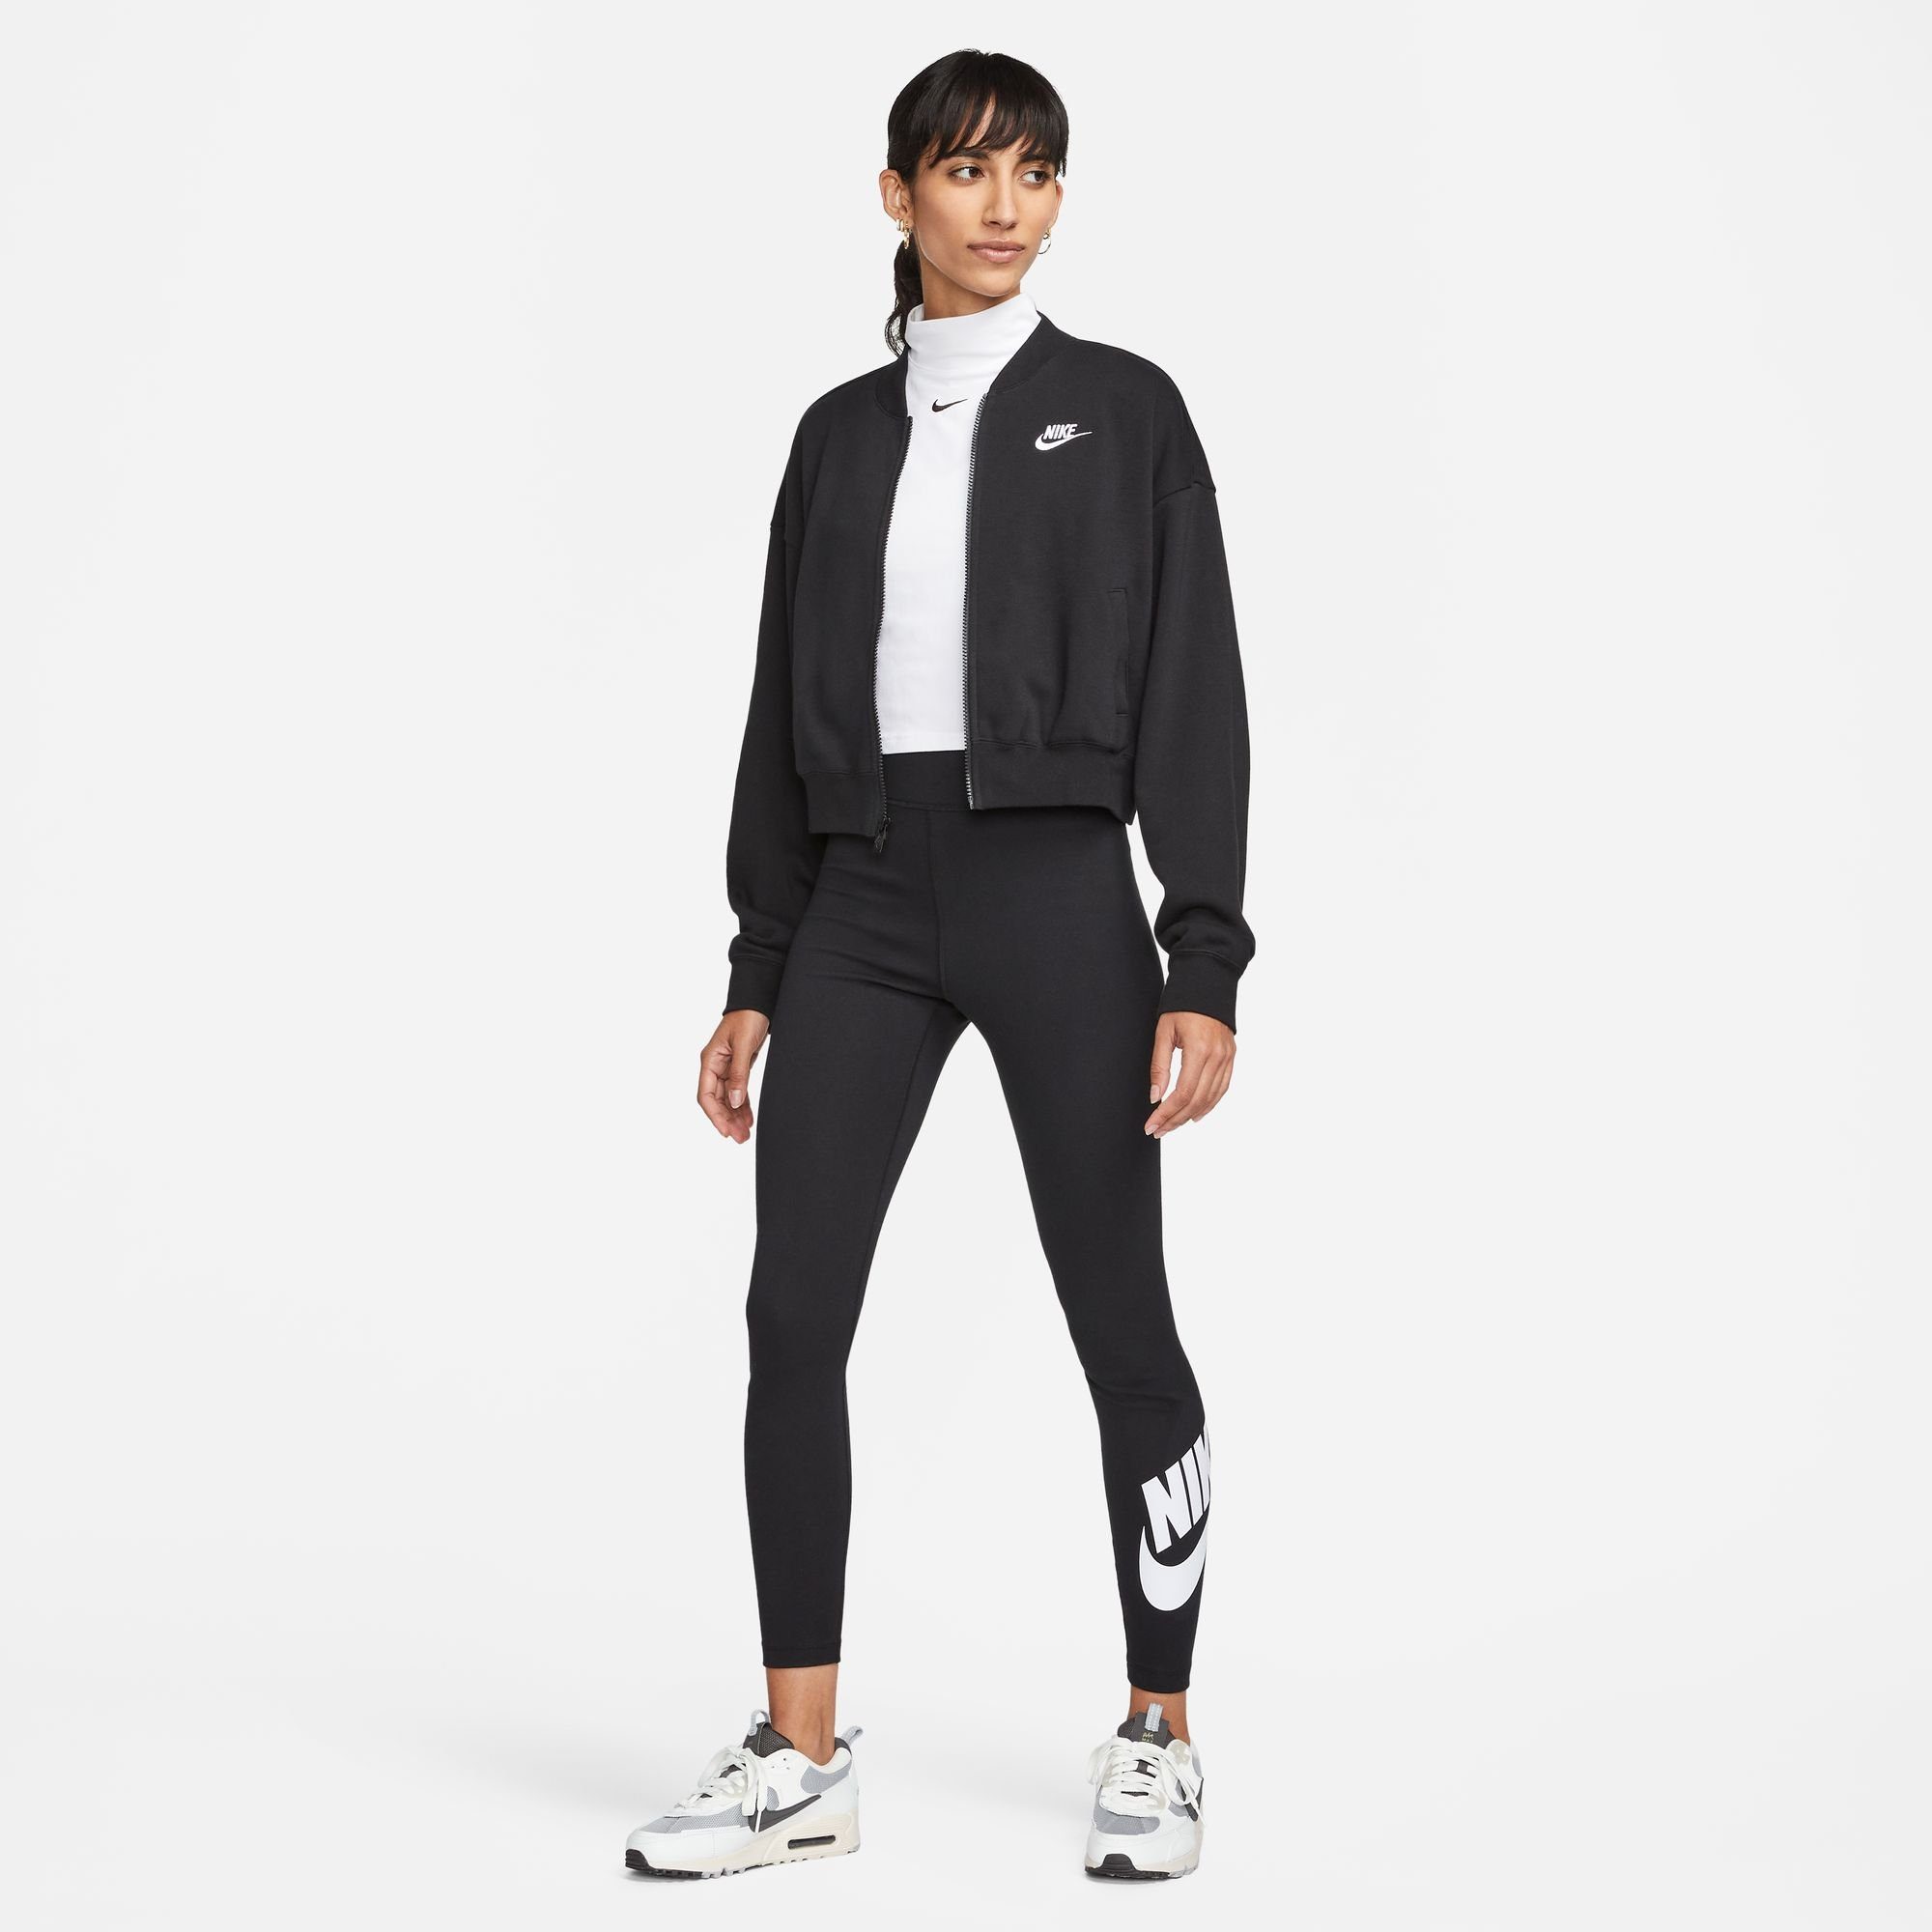 OVERSIZED BLACK/WHITE Sportswear Sweatjacke CROPPED FULL-ZIP Nike WOMEN'S JACKET FLEECE CLUB